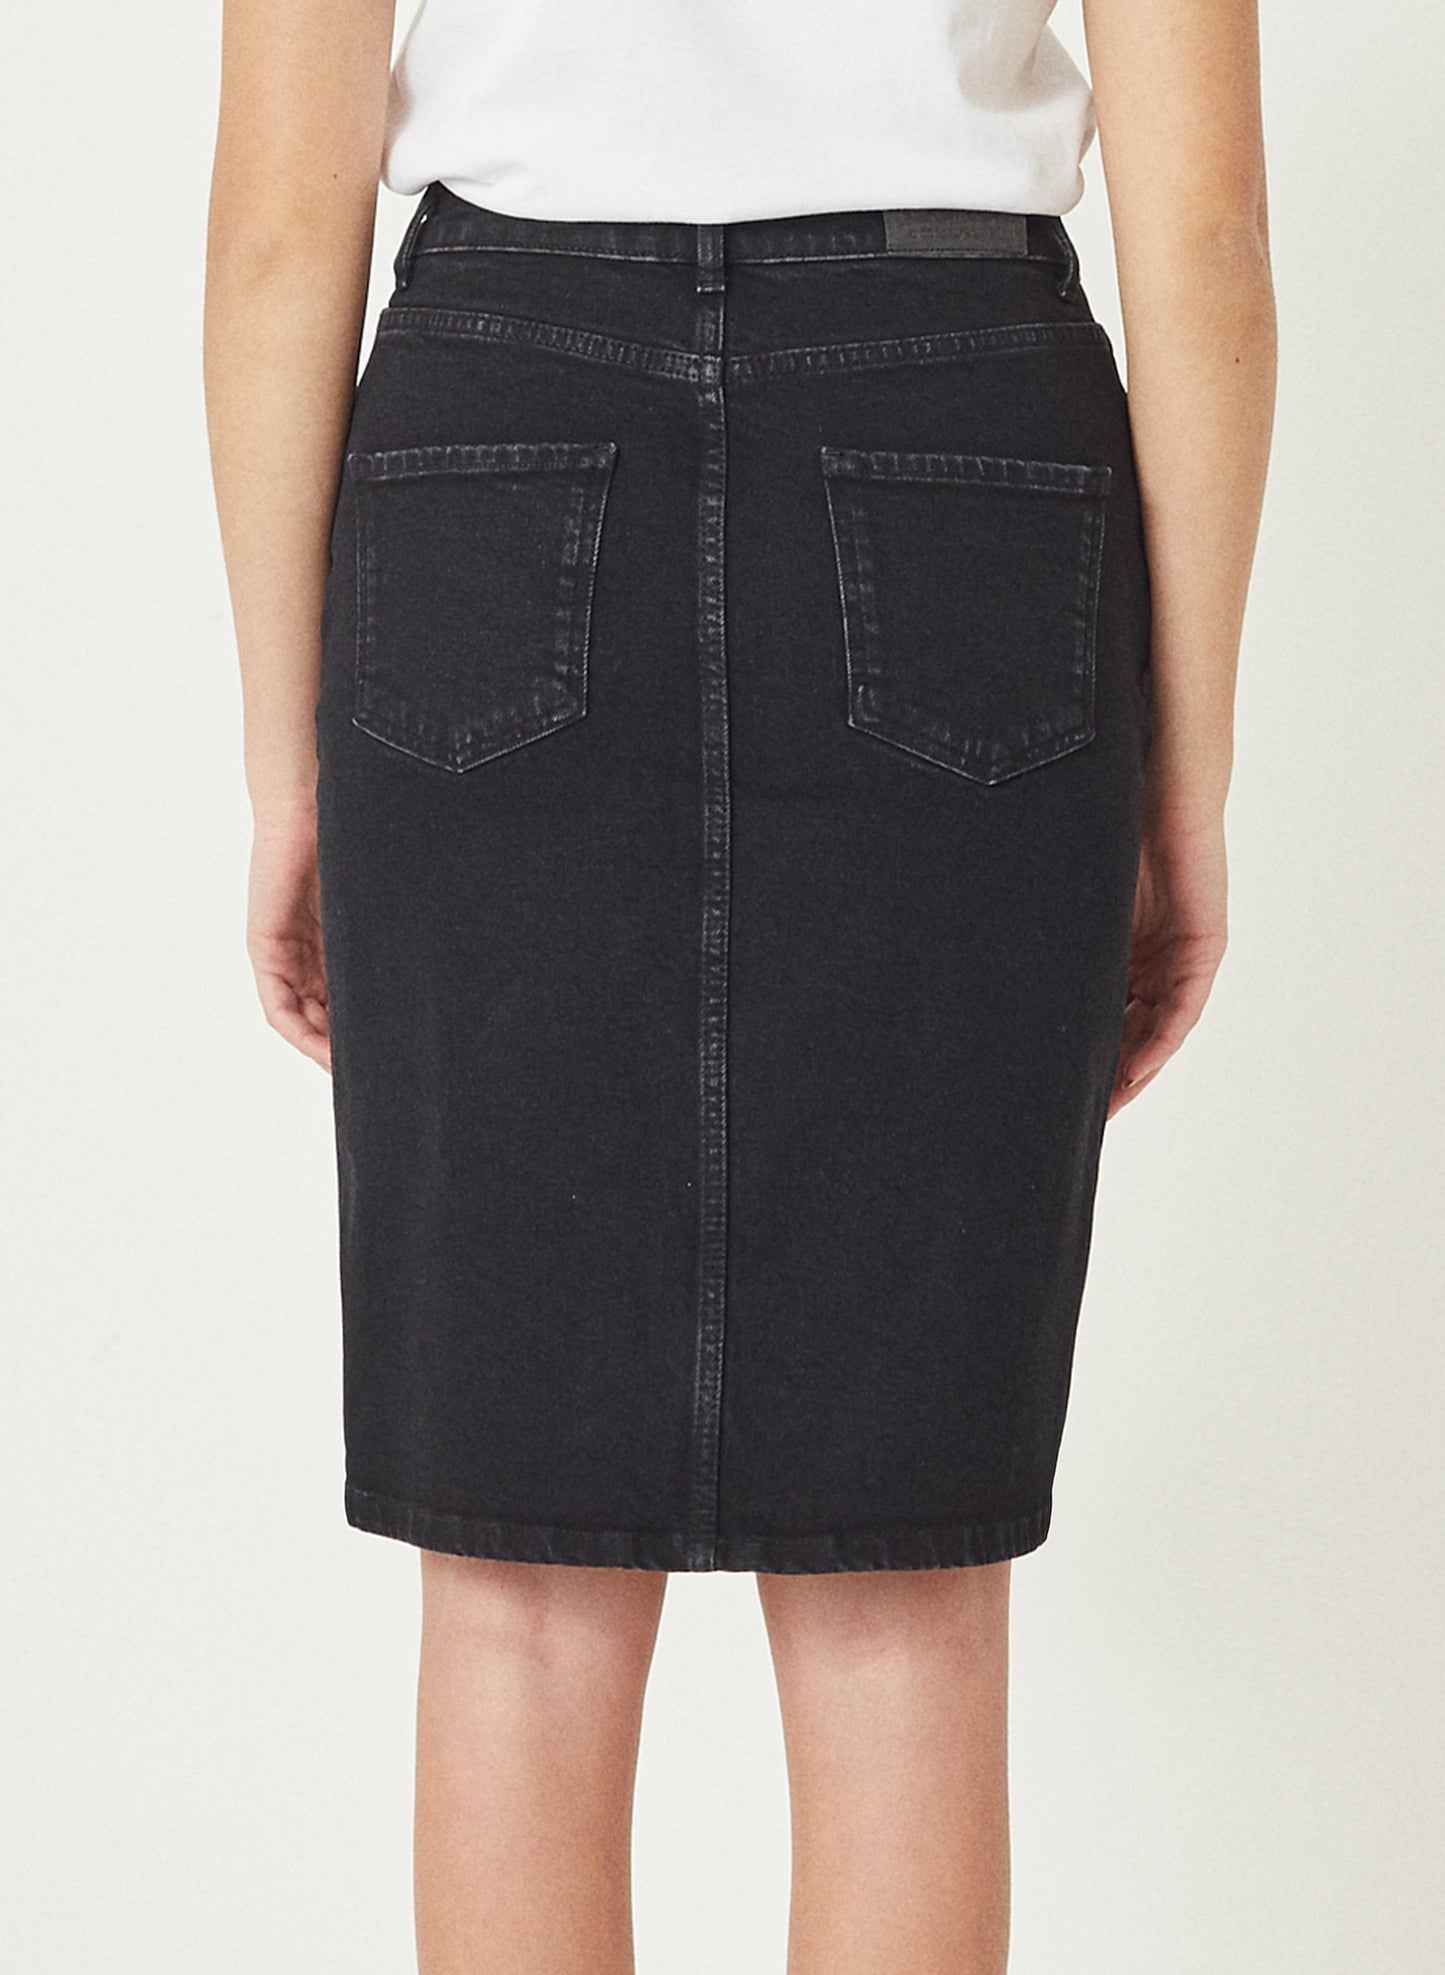 ELENA - Long Denim Jeans Skirt - Black Denim